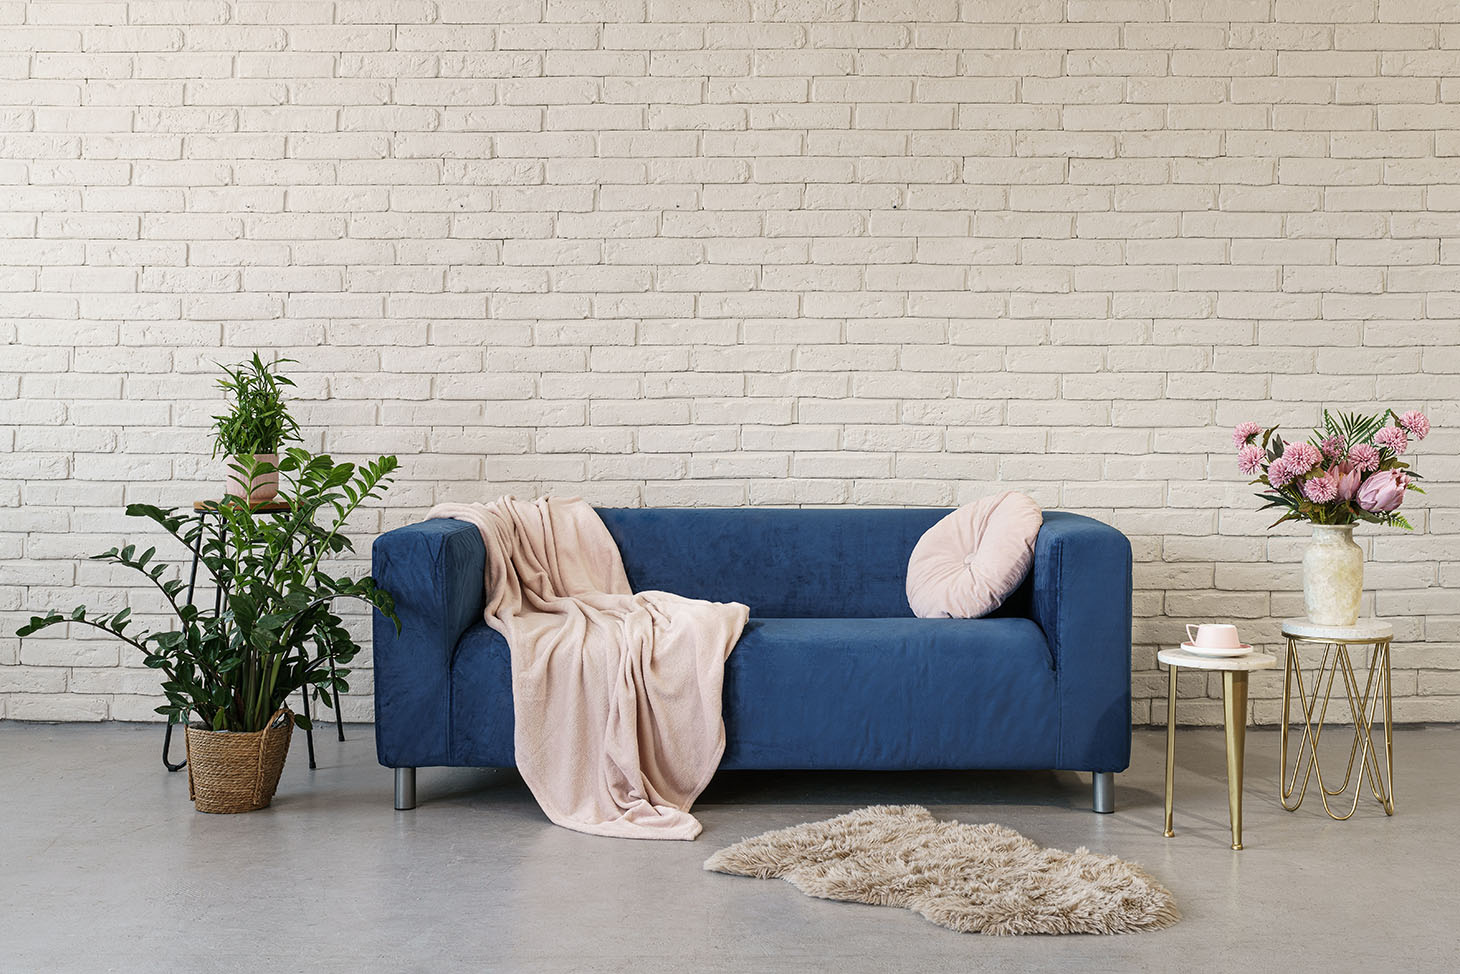 IKEA Klippan 2 Seater in Blue Velvet Sofa Cover